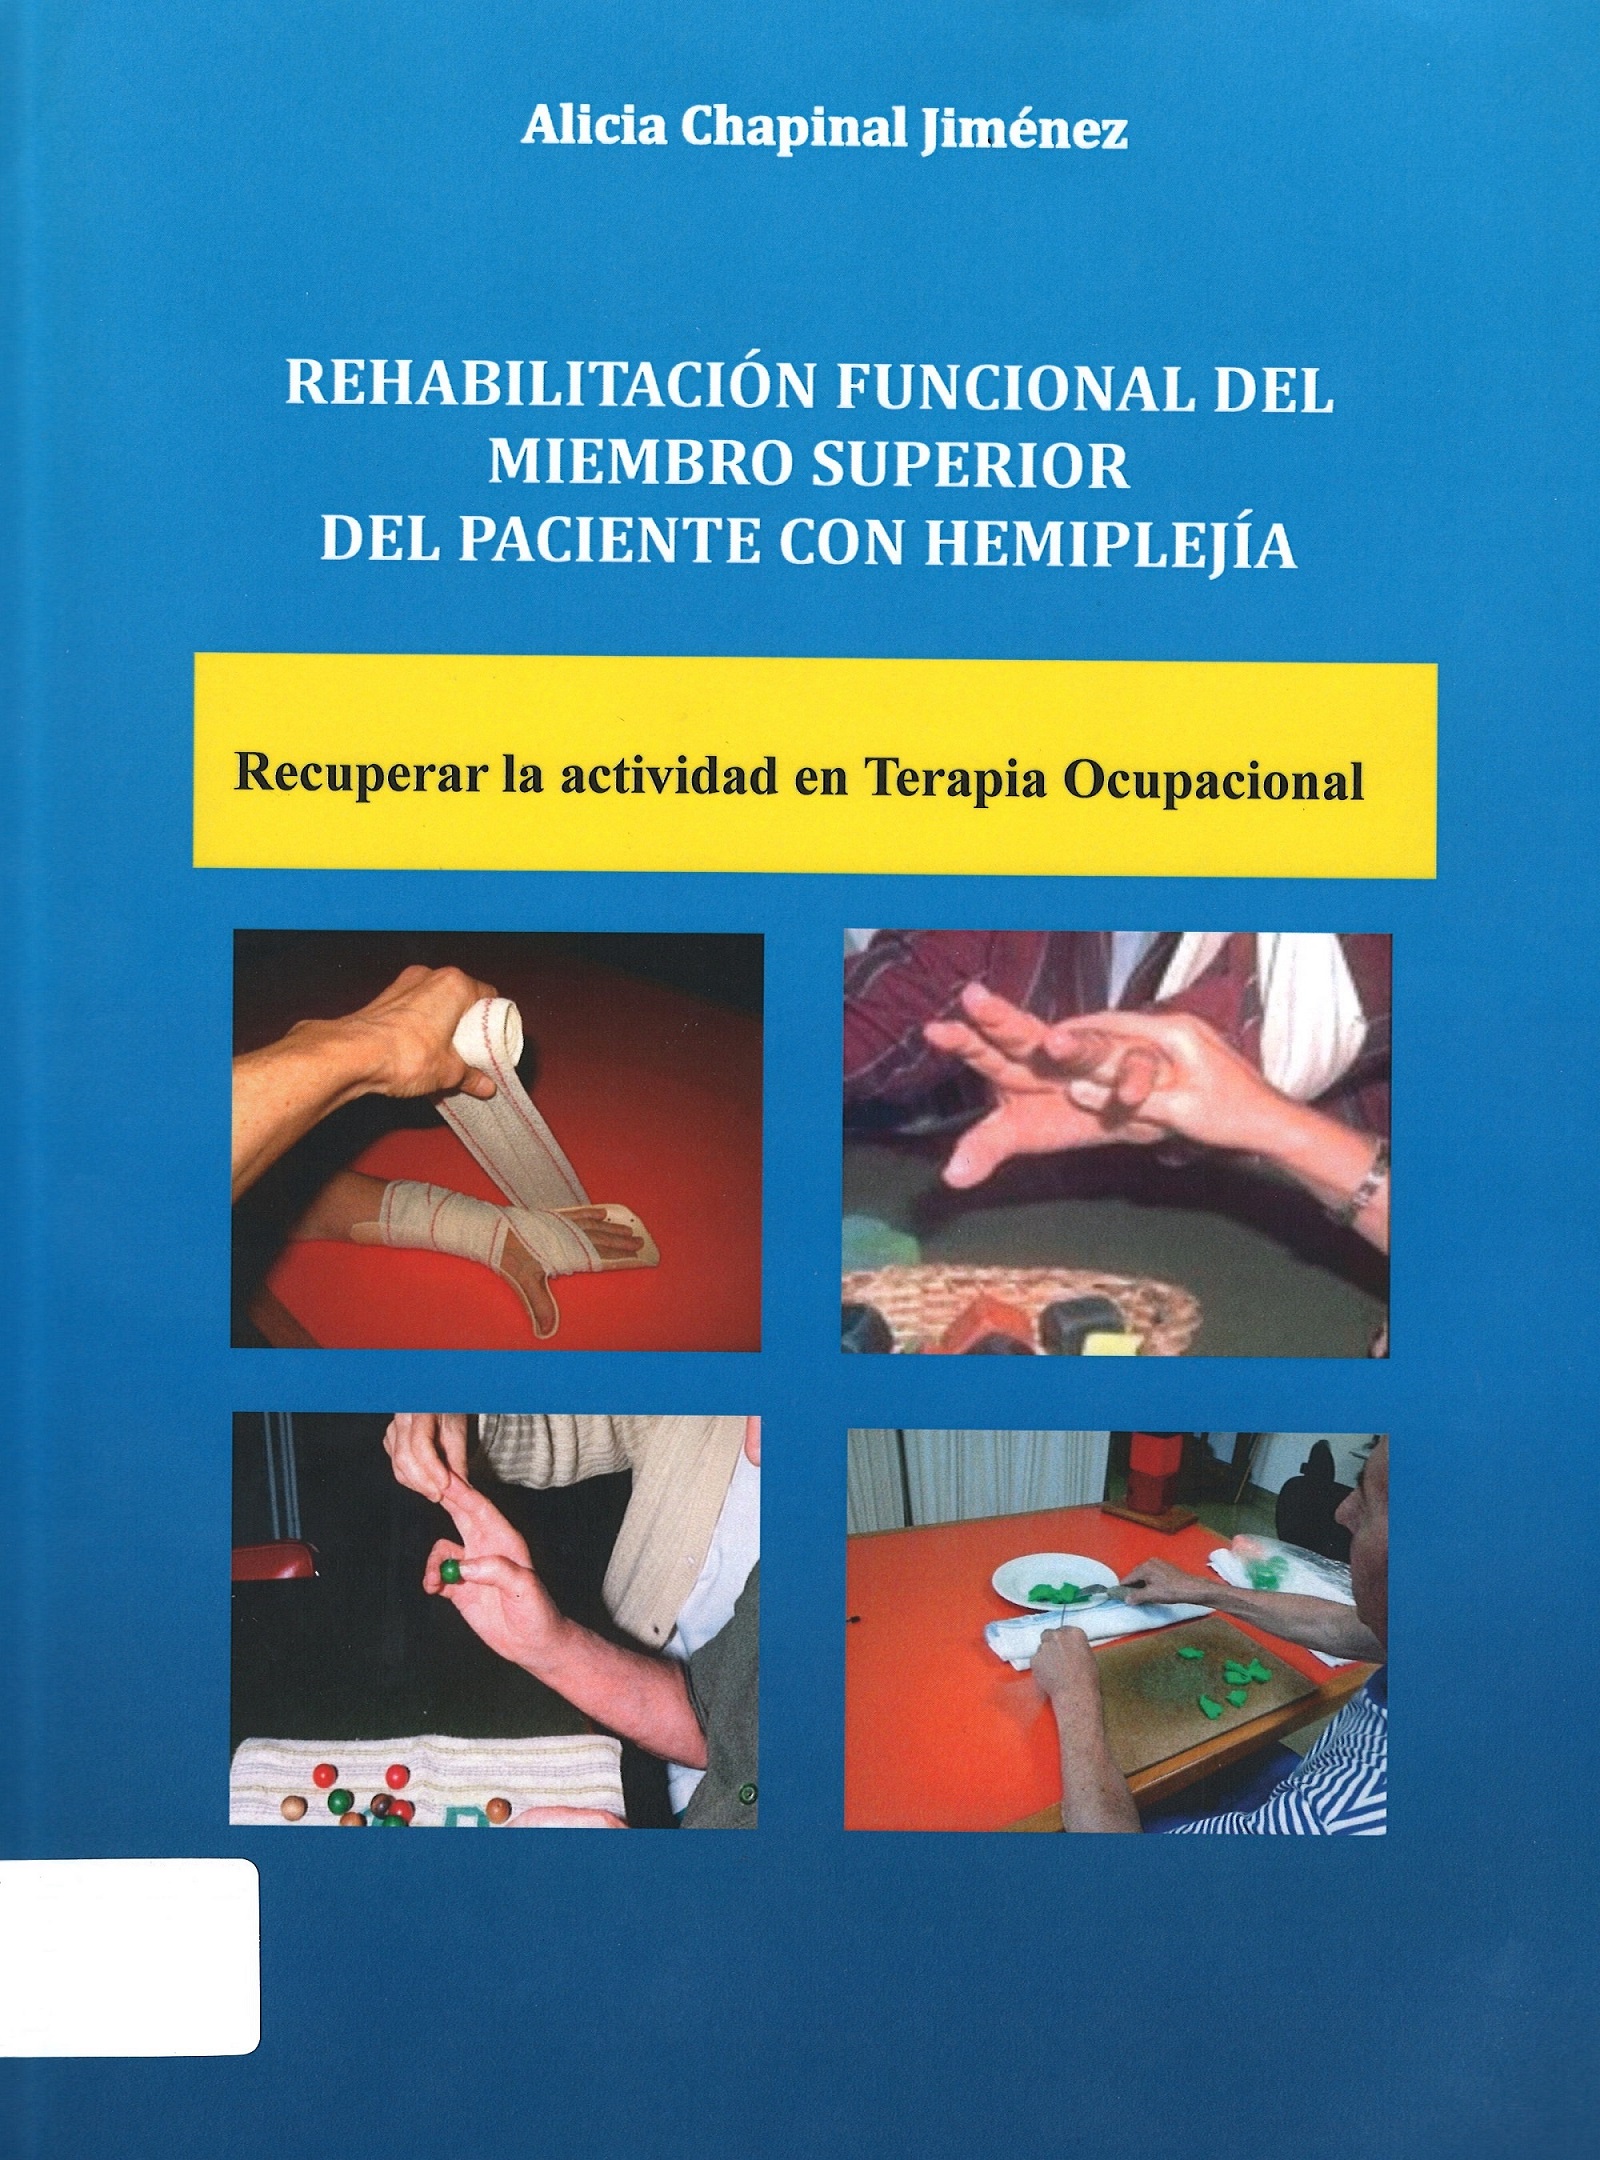 Imagen de portada del libro Rehabilitación funcional del miembro superior del paciente con hemiplejía